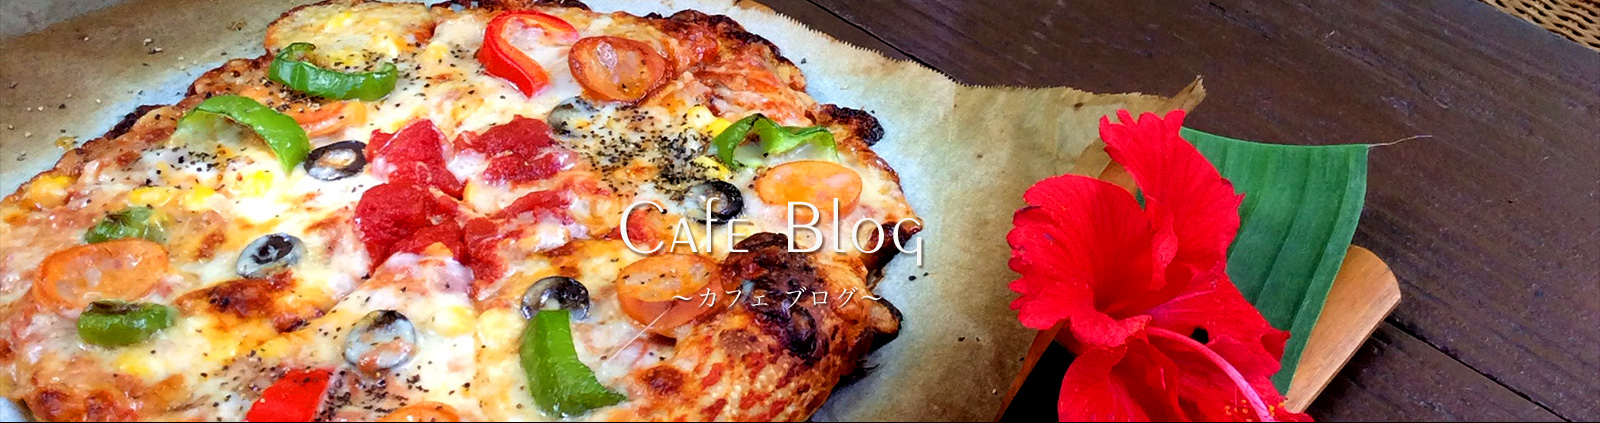 Cafe blog